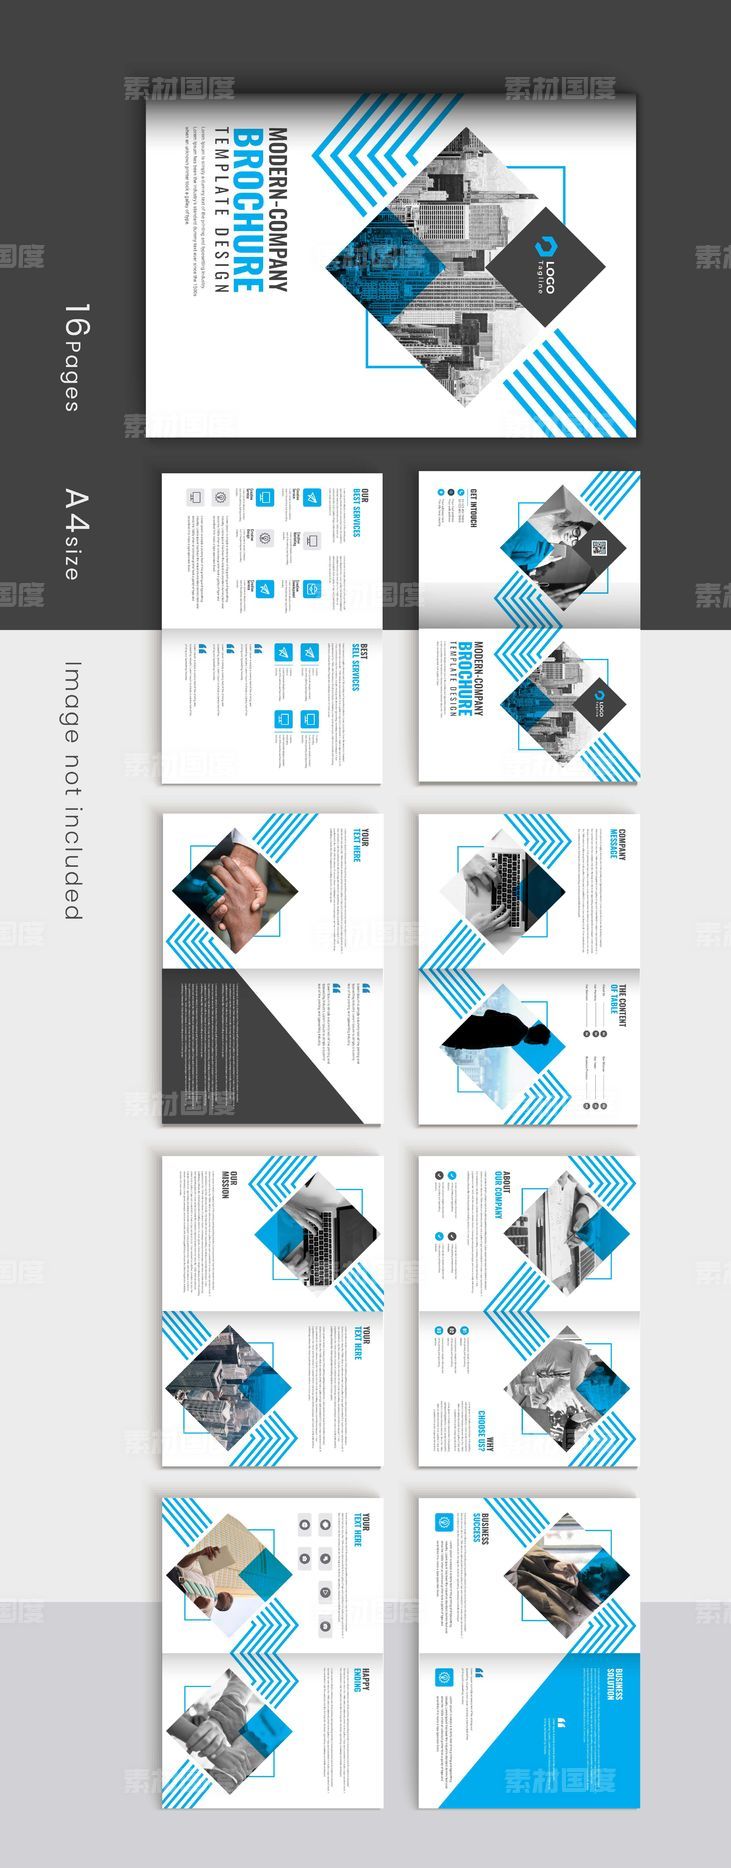 蓝色创意线条公司简介画册宣传册设计模板